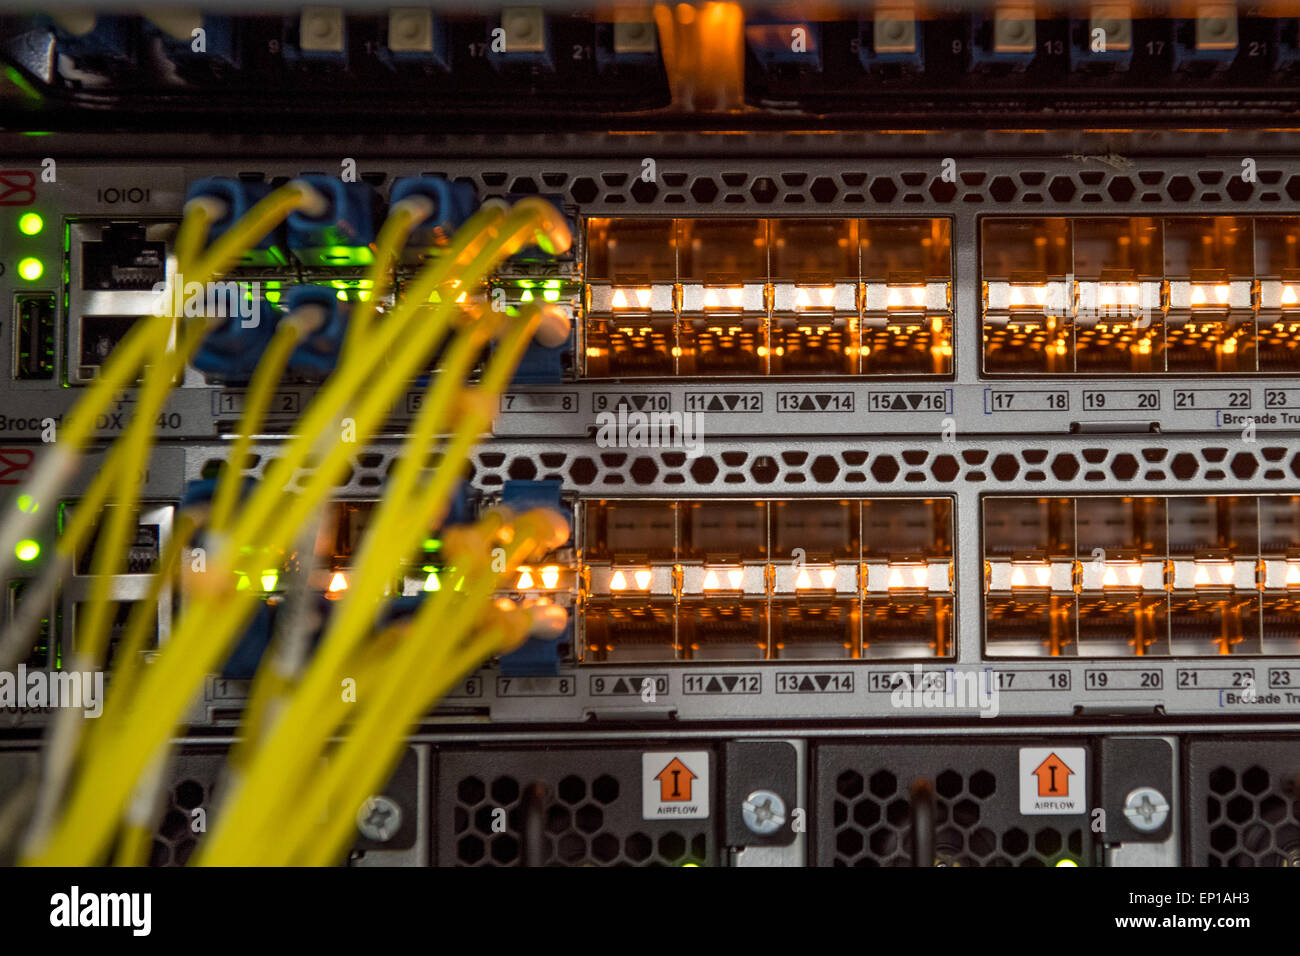 La parte trasera de un ordenador servidor utilizado para cloud computing mostrando los routers y los cables de red. Foto de stock